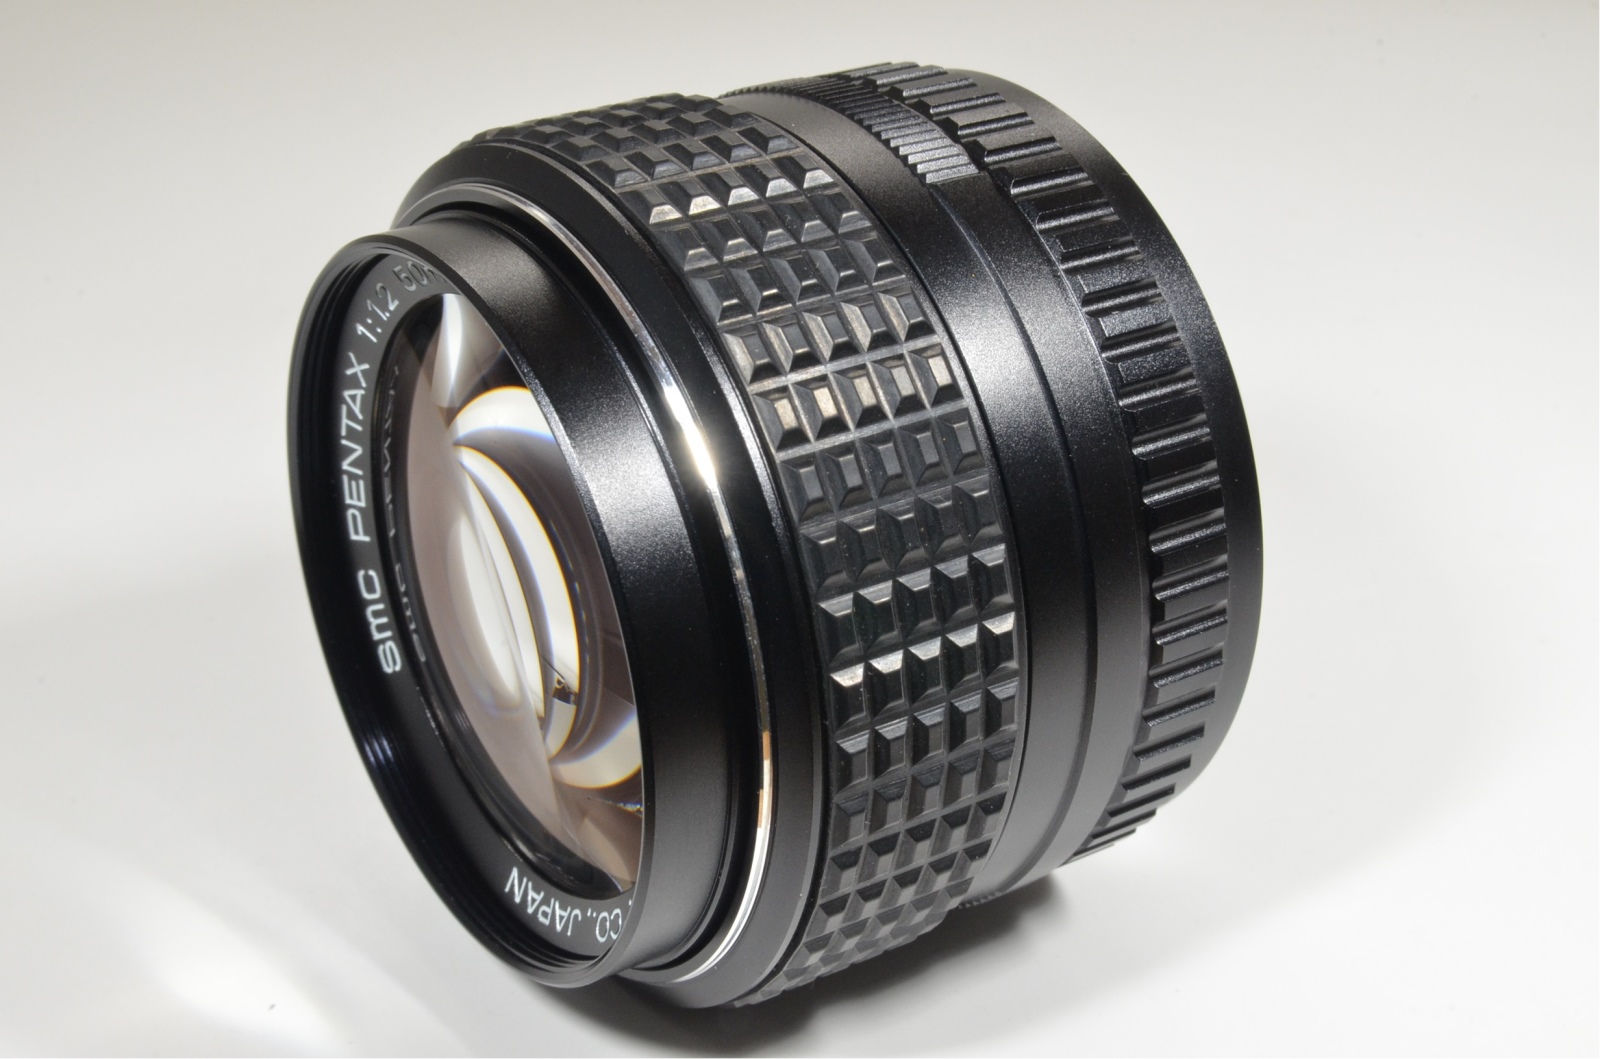 Asahi smc PENTAX 50mm F/1.2 Lens for K Mount from Japan #a0996 